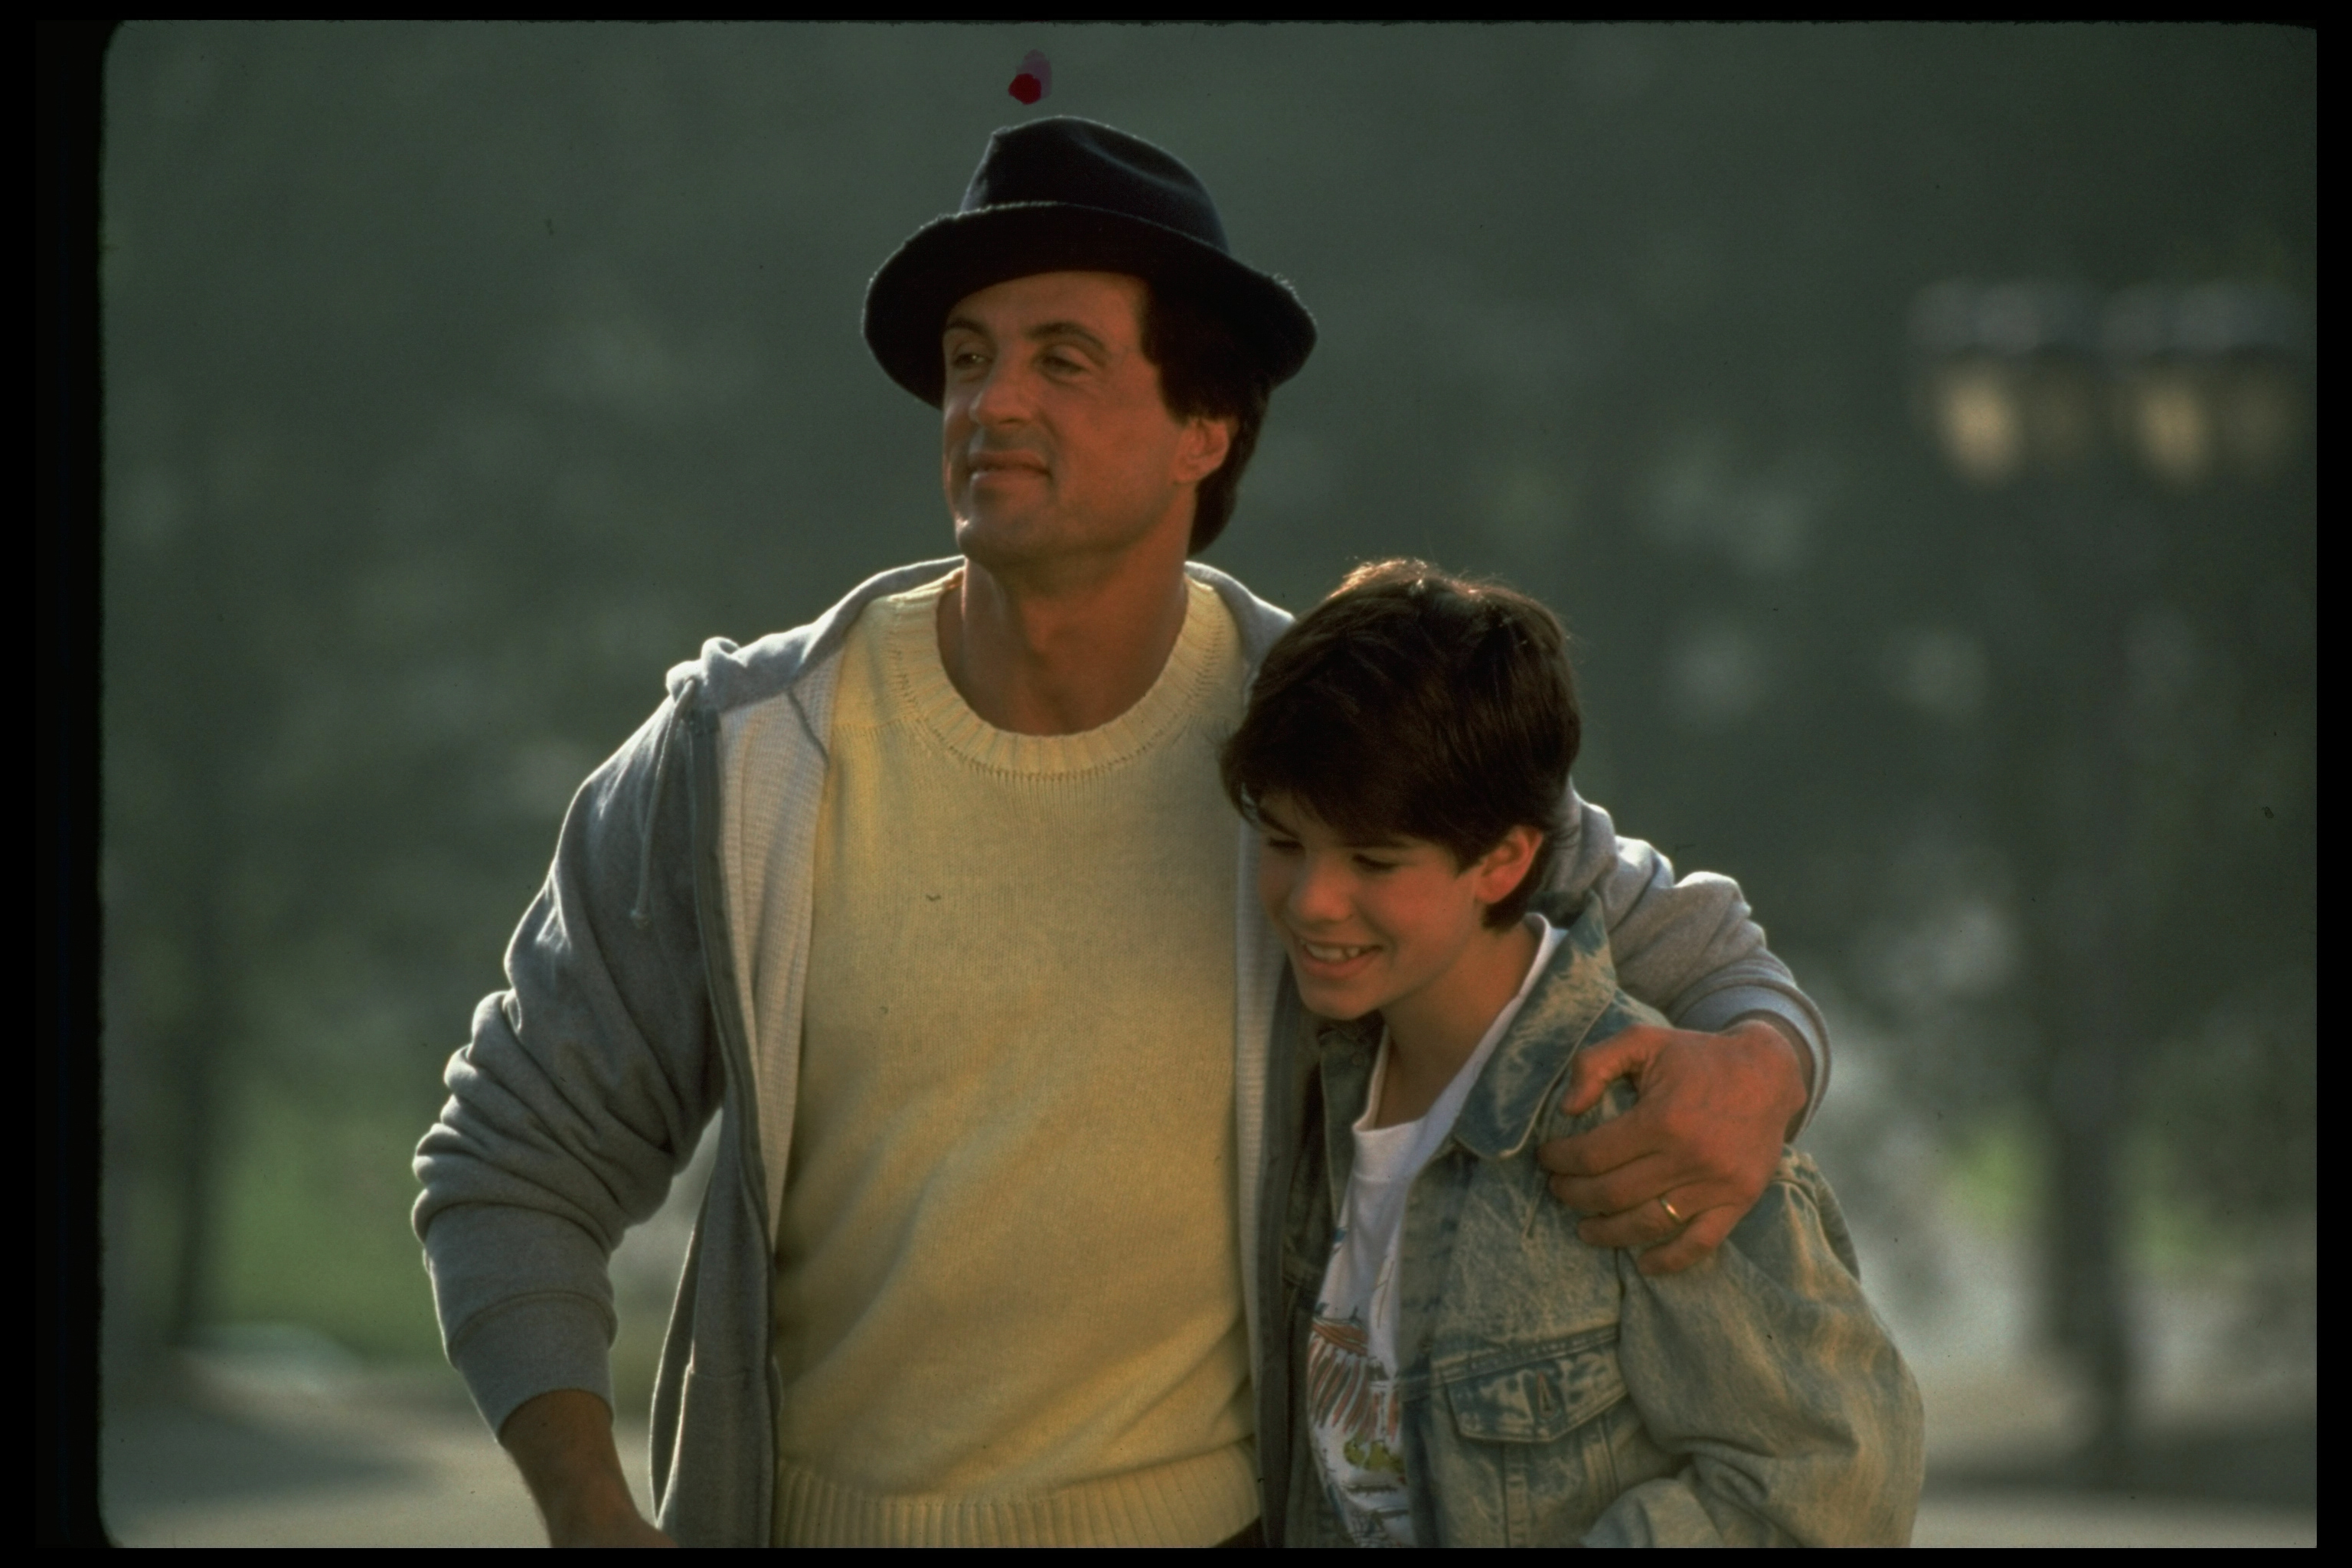 El niño y su padre en el rodaje de la película de MGM/UA "Rocky V" en 1990. | Foto: Getty Images